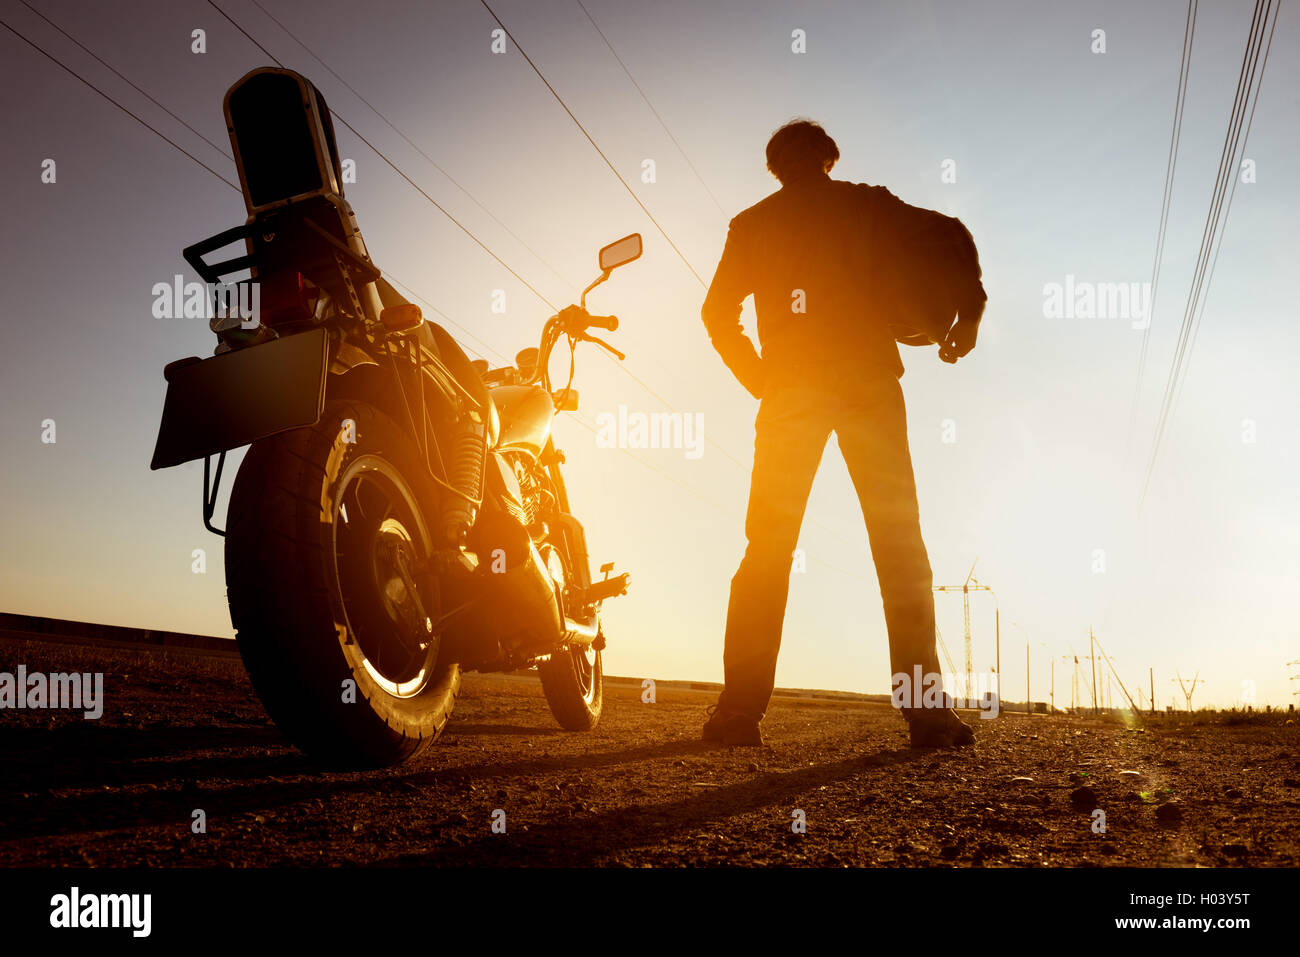 Moto avec motard se dresse sur fond coucher de sky road Banque D'Images